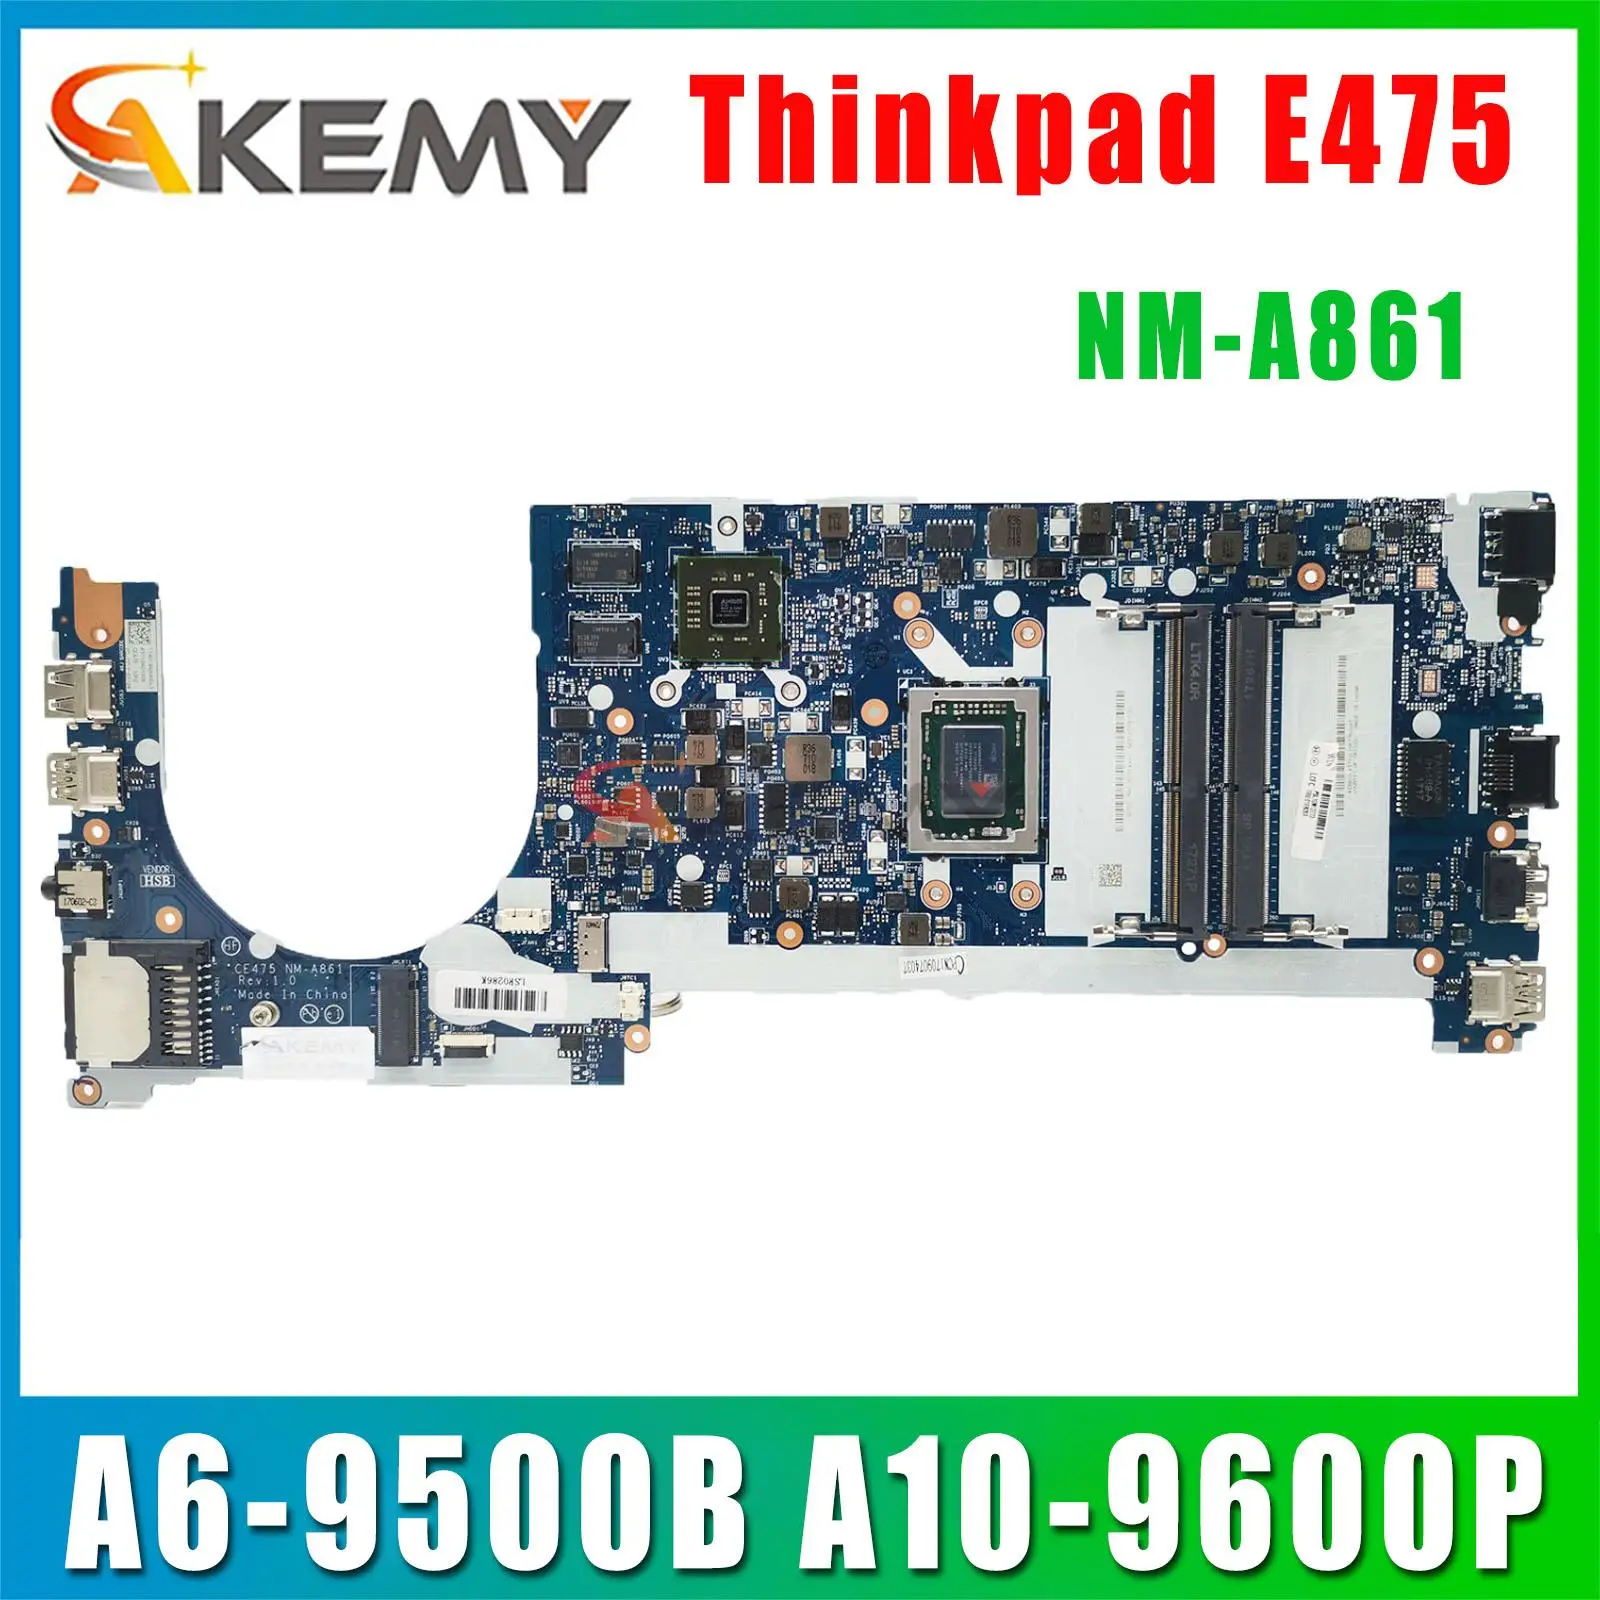 CE475 NM-A861 za Lenovo ThinkPad E475 zvezek matična plošča PROCESOR A6-9500B A10-9600P R5 M430 2G 100% test delo0